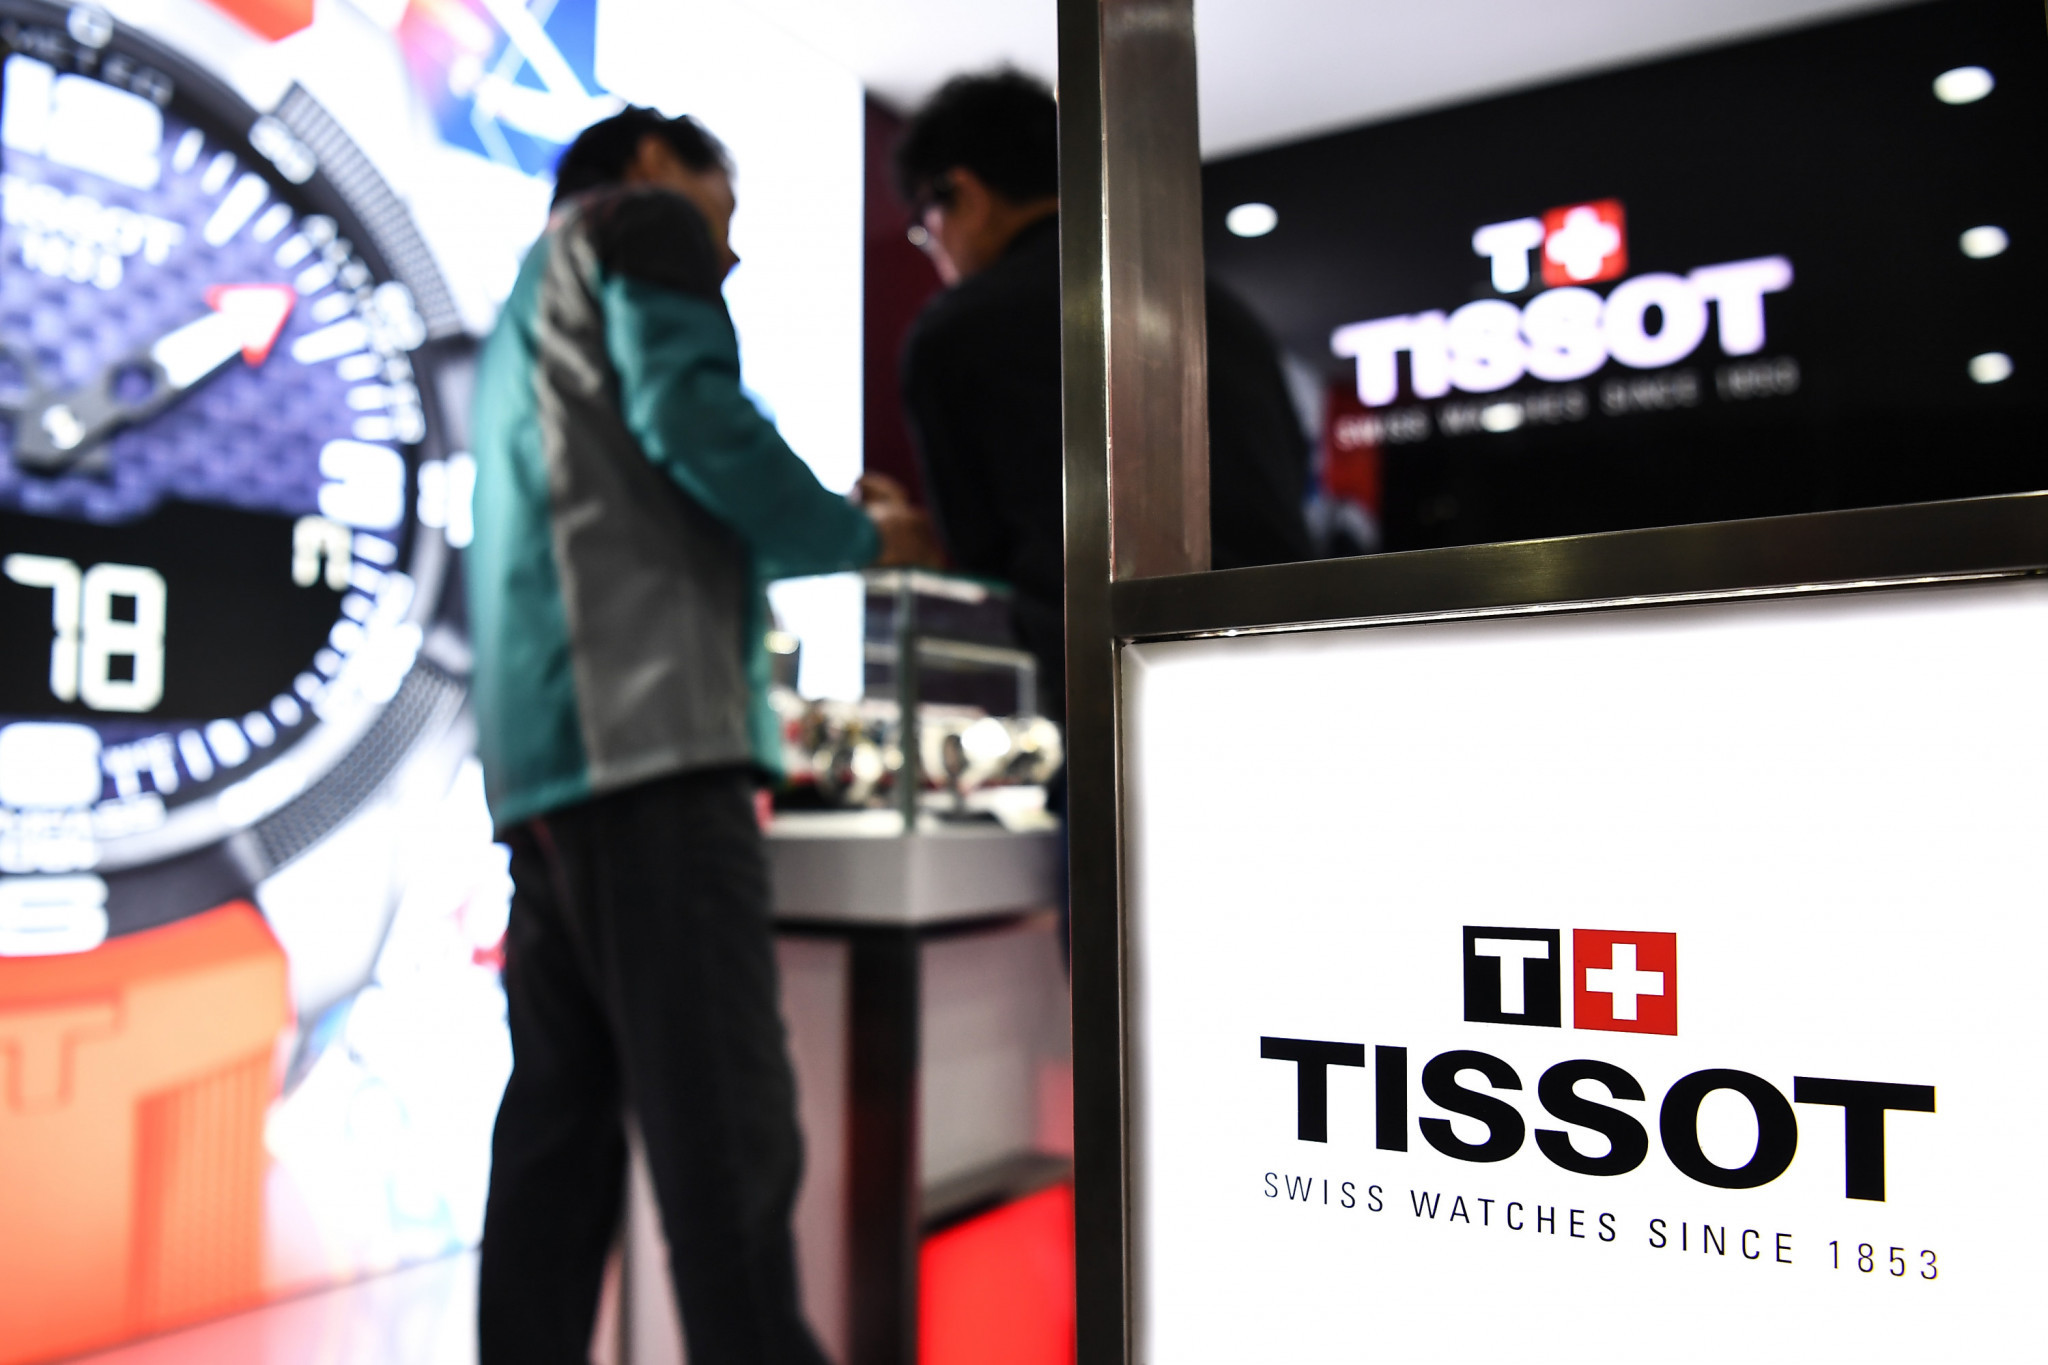 Tissot named gold partner for Lucerne 2021 Winter Universiade